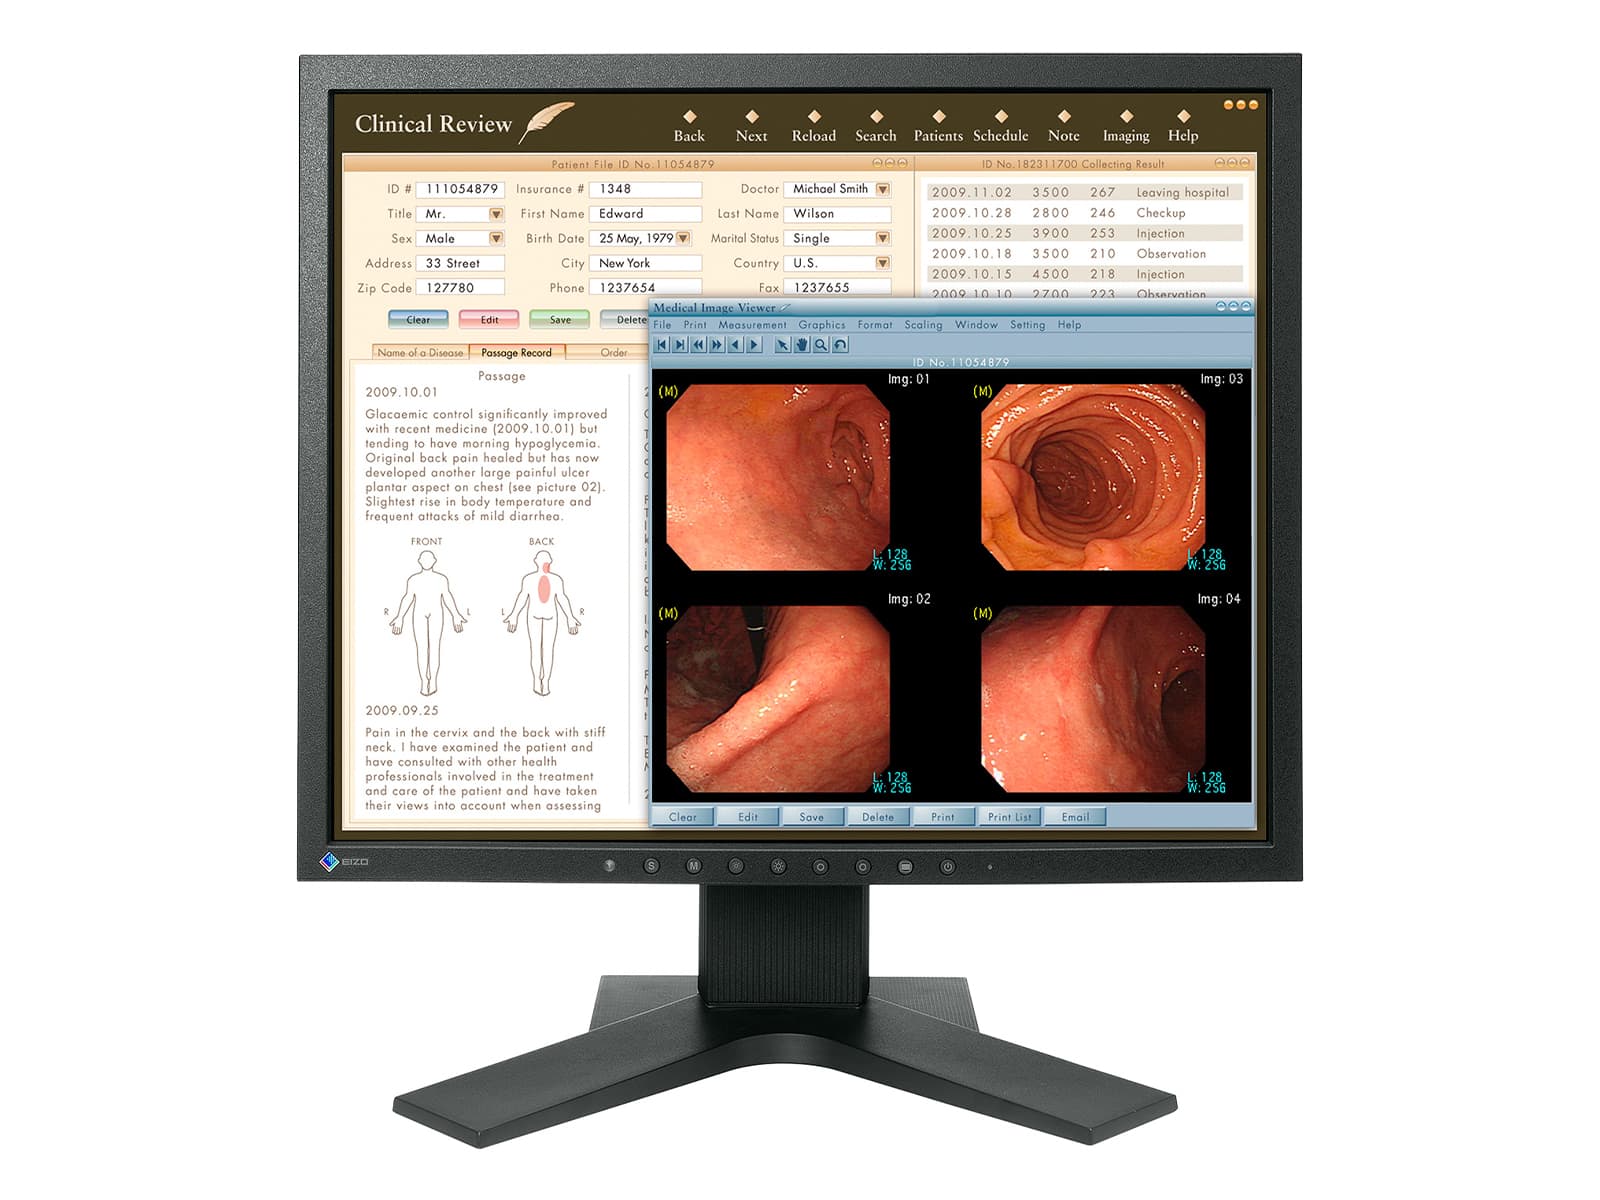 Monitor de revisión clínica en color Eizo RadiForce MX191 de 1 MP y 19" (MX191) Monitors.com